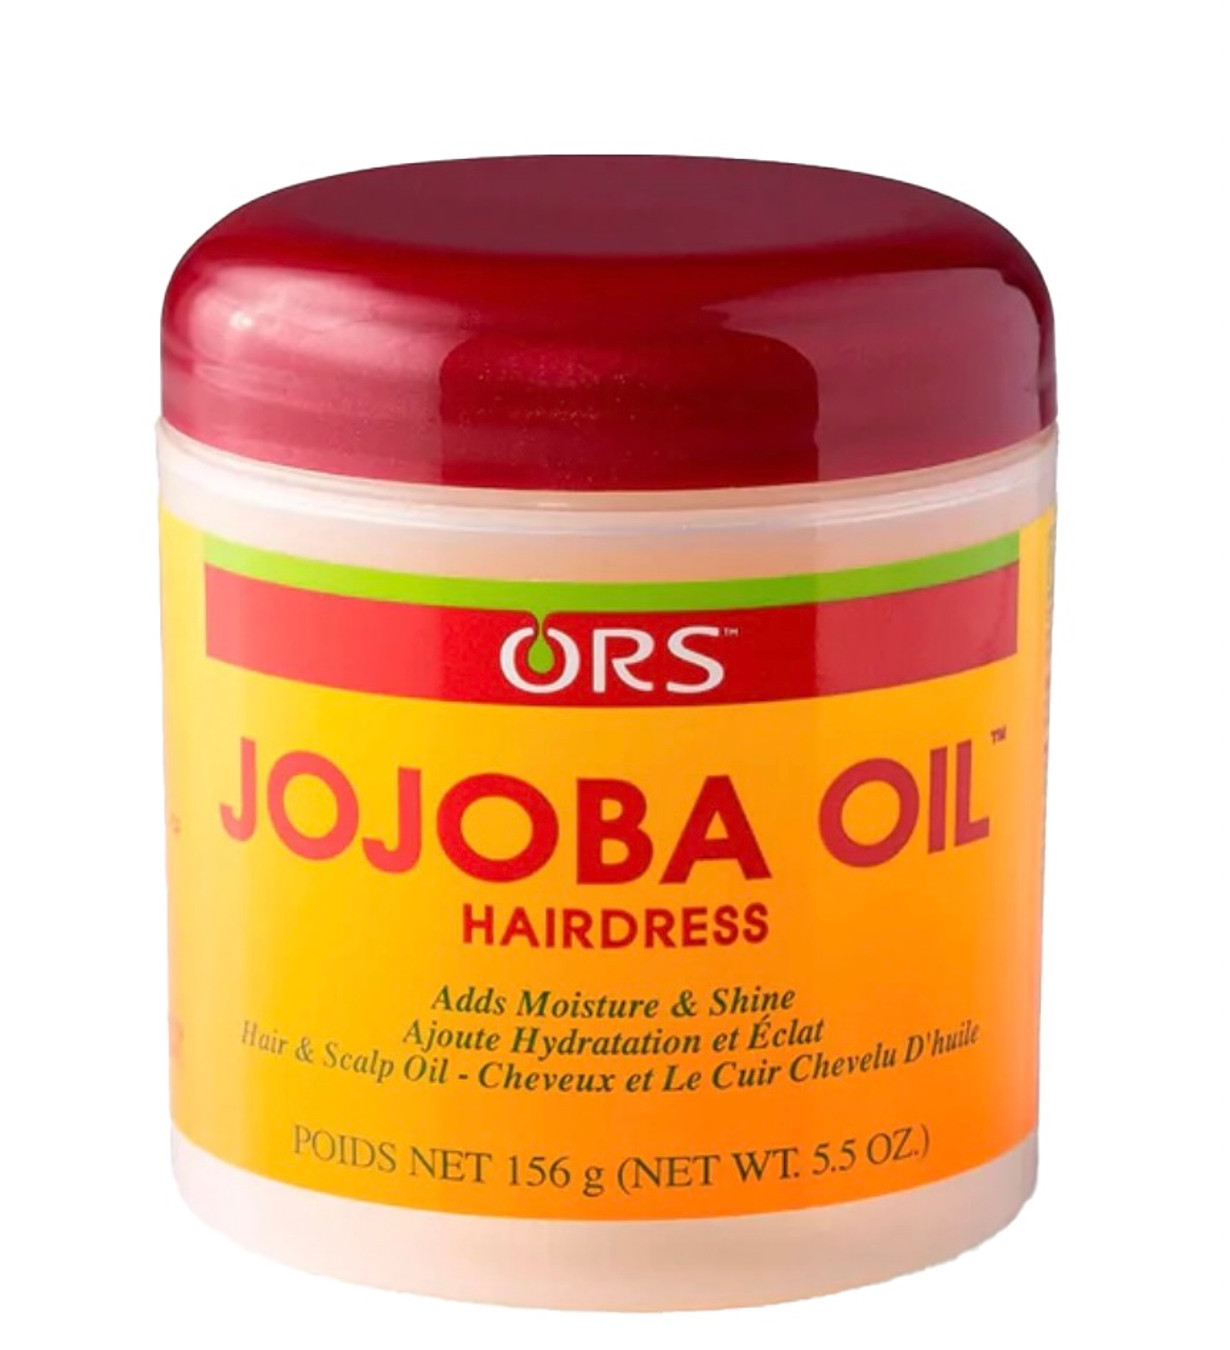 ORS Jojoba Oil Hairdress